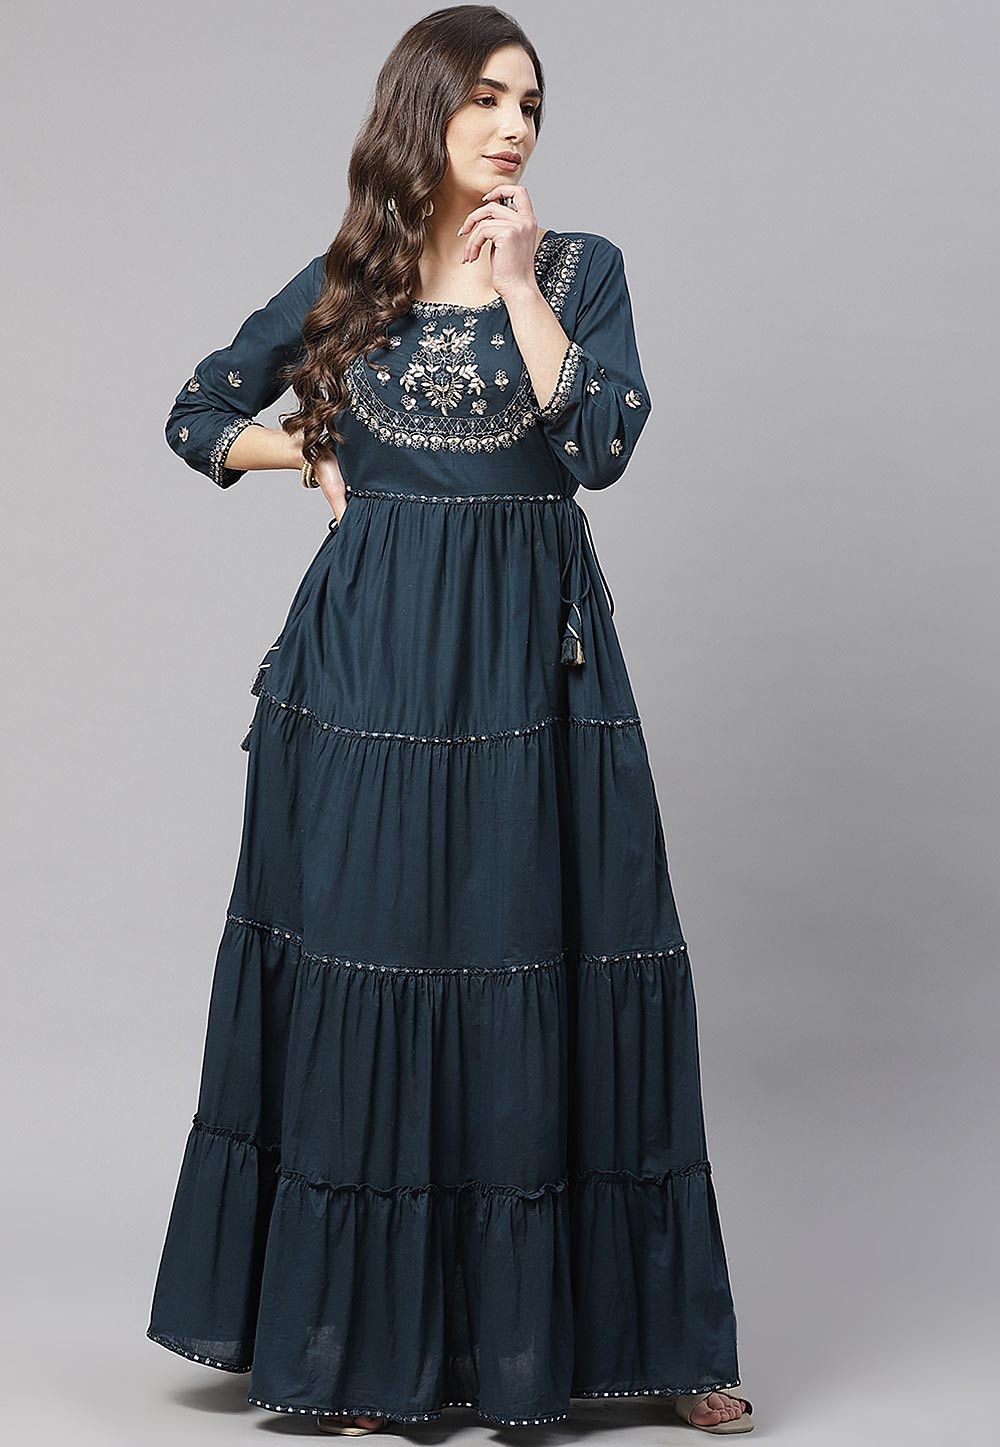 dark teal lace dress